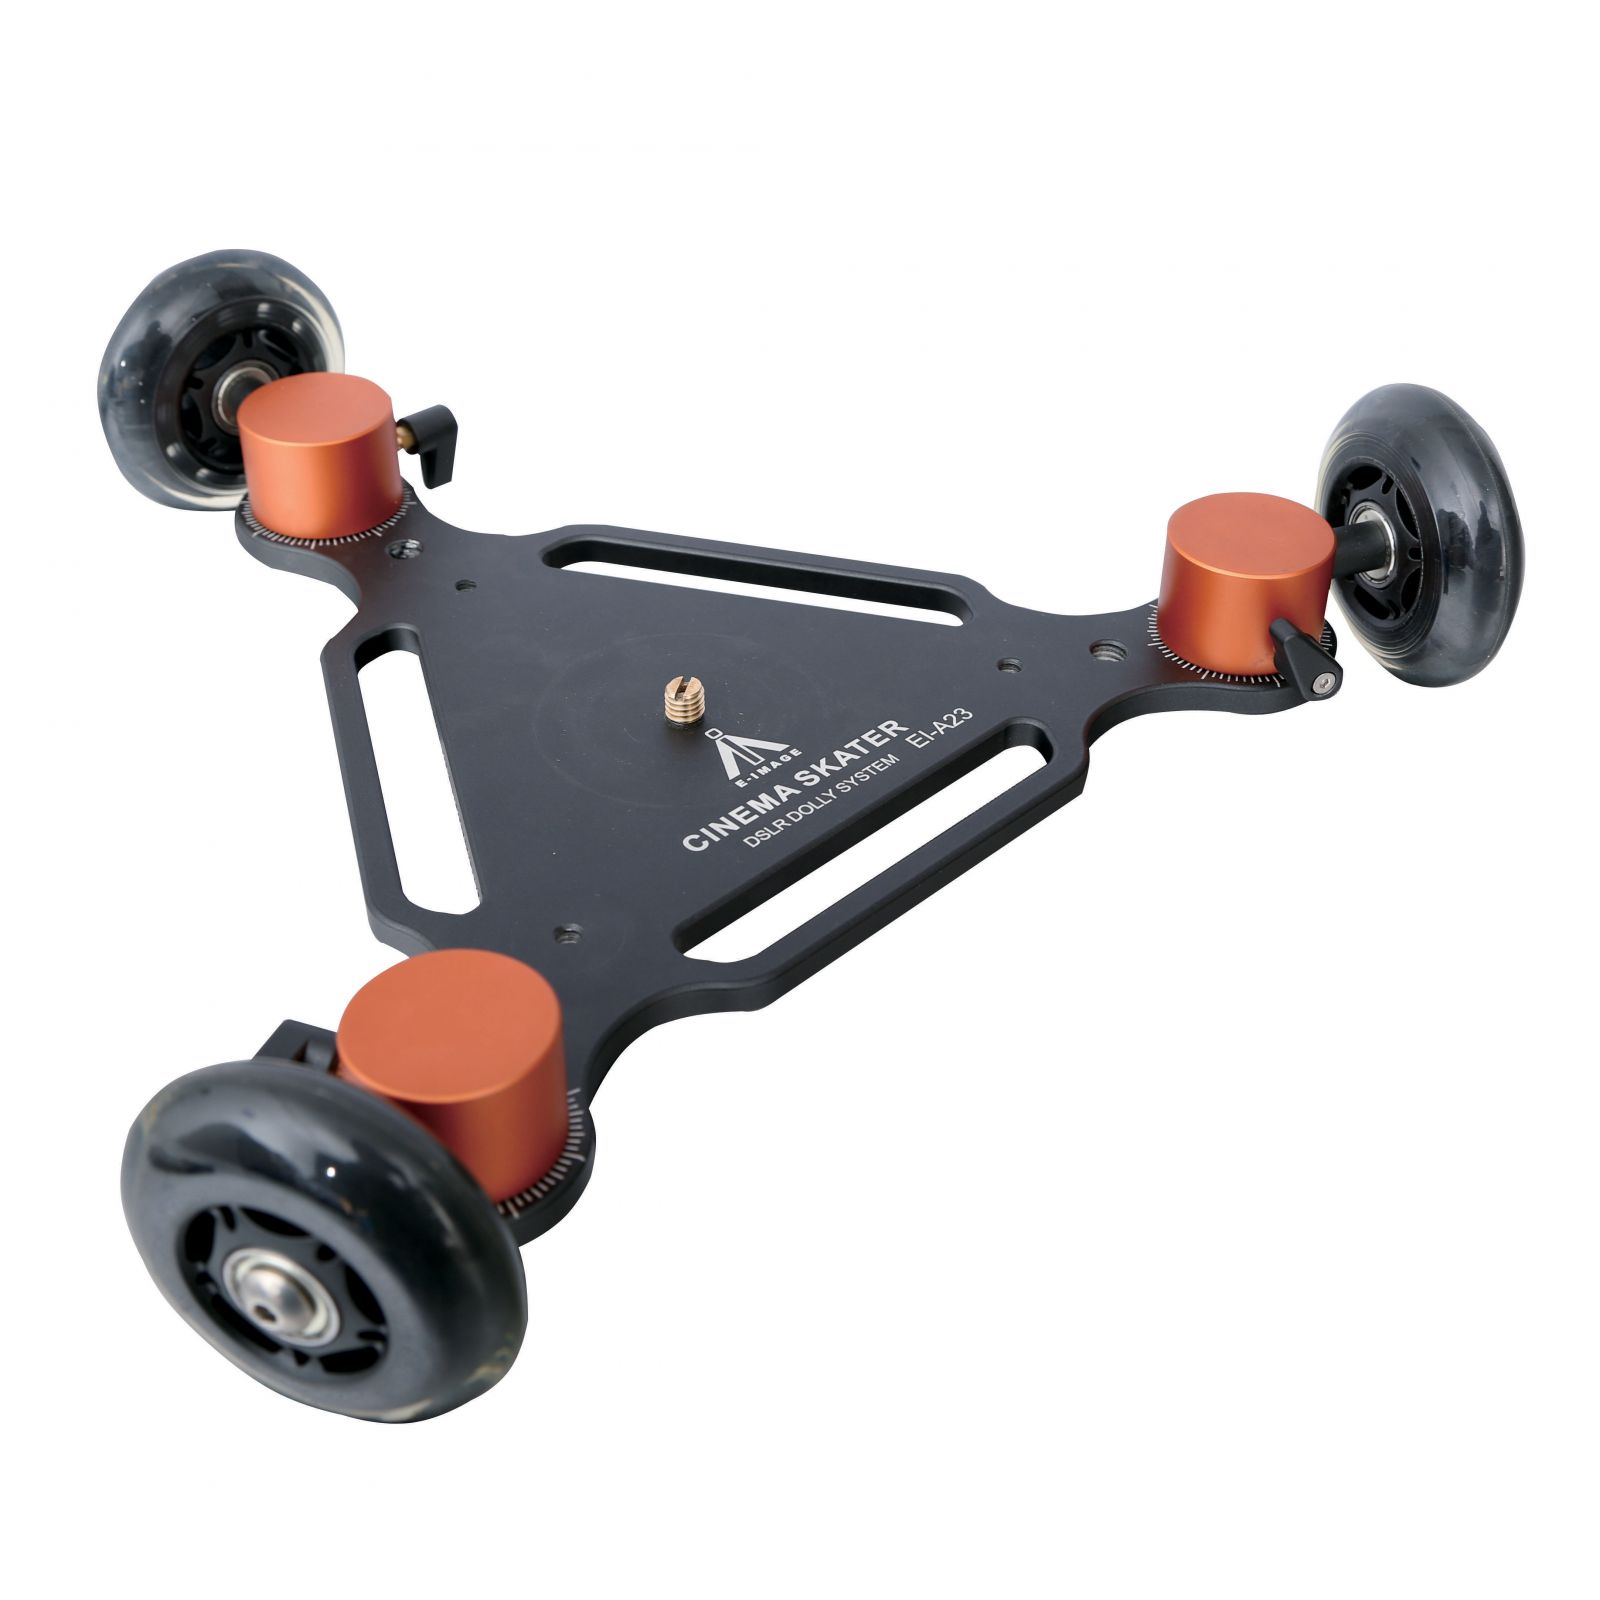 Soporte con ruedas sistema Dolly para cámaras DSLR E-Image Skater